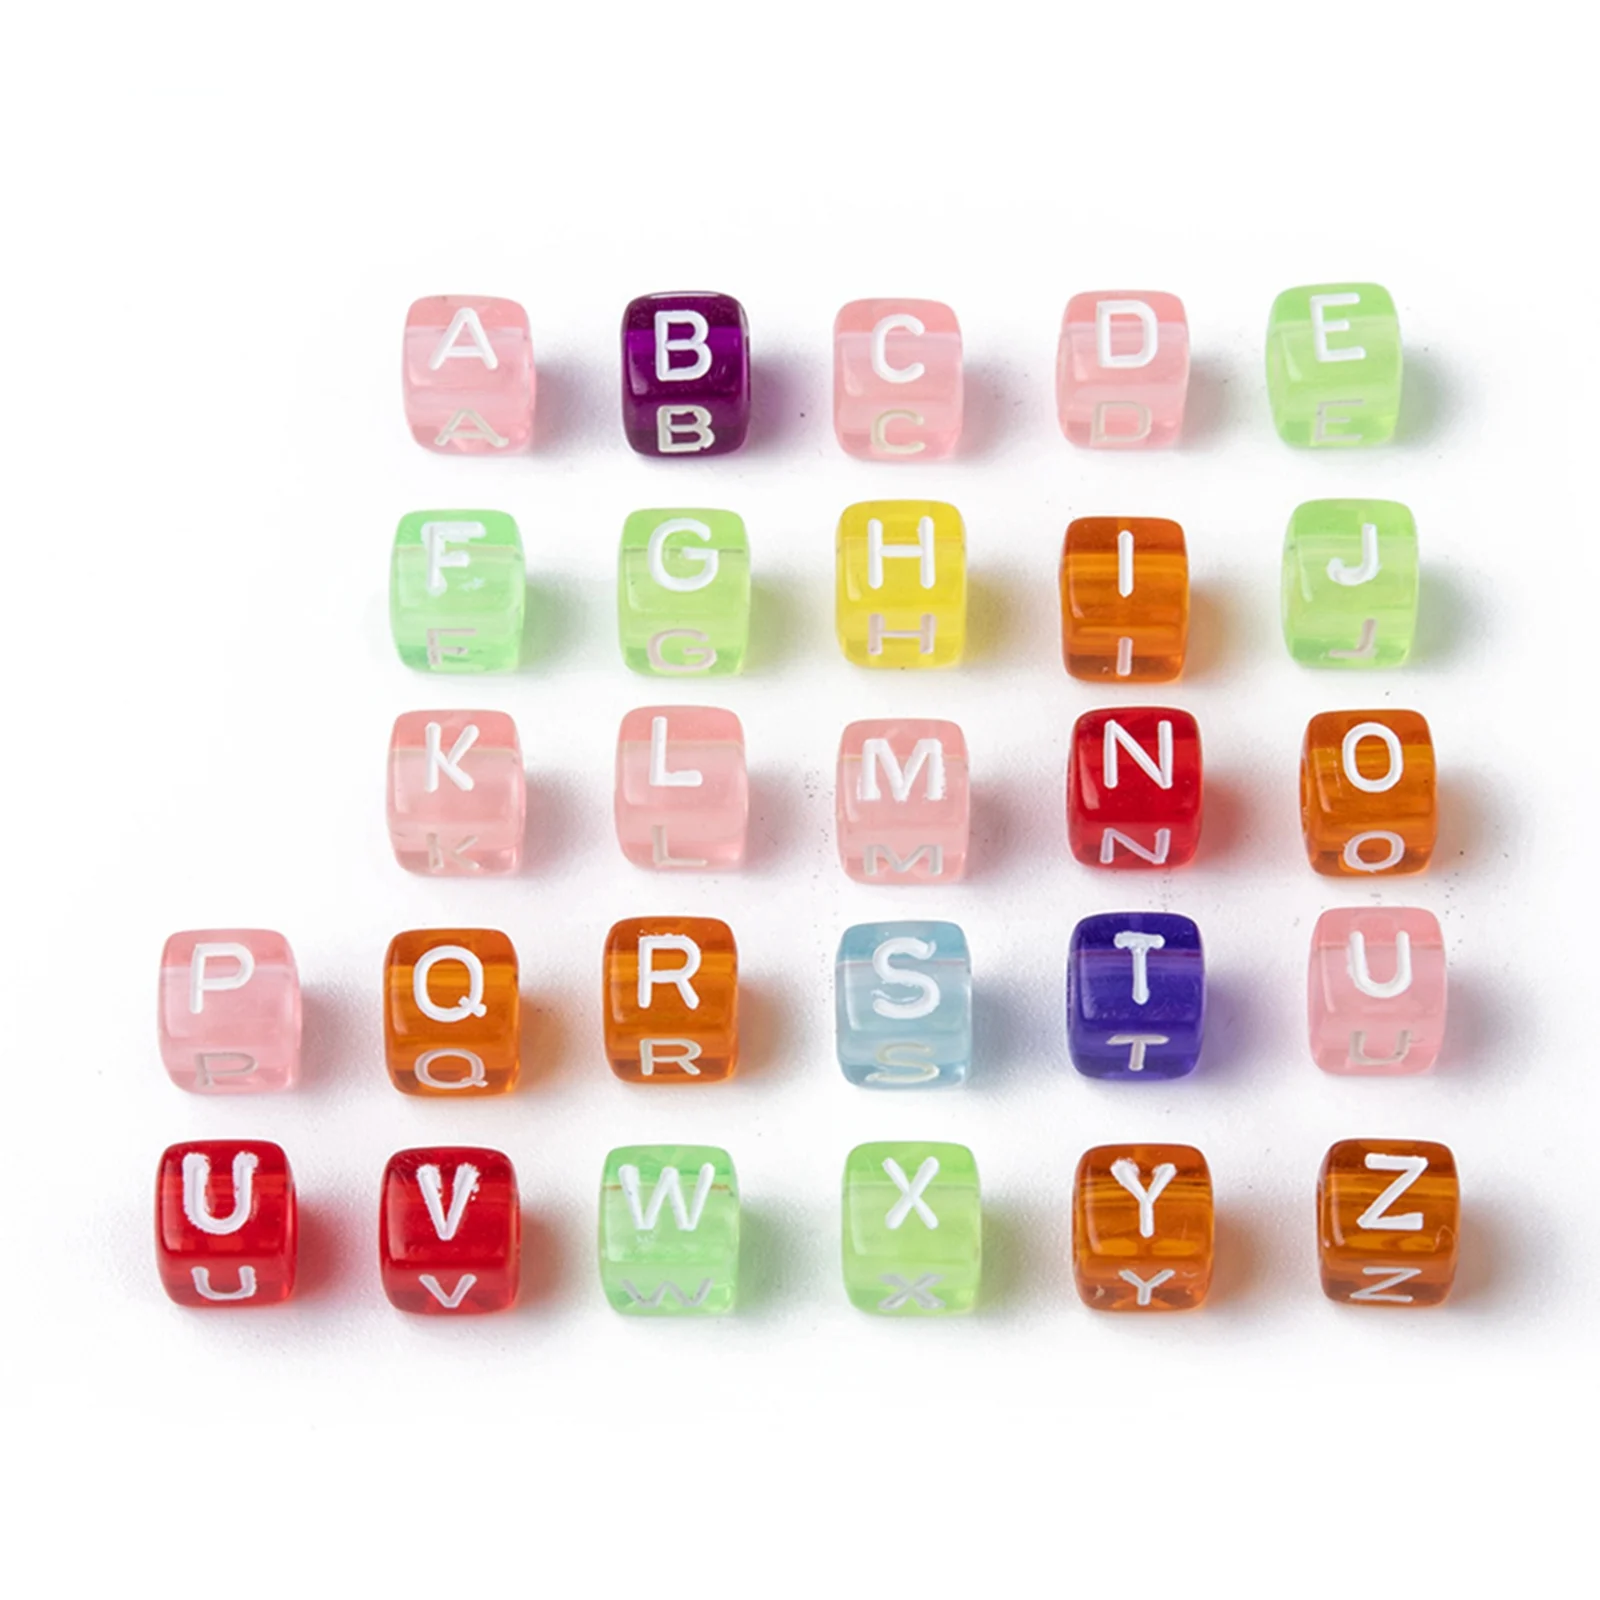 PandaHall 6mm Large Hole Acrylic Cube Letter Beads